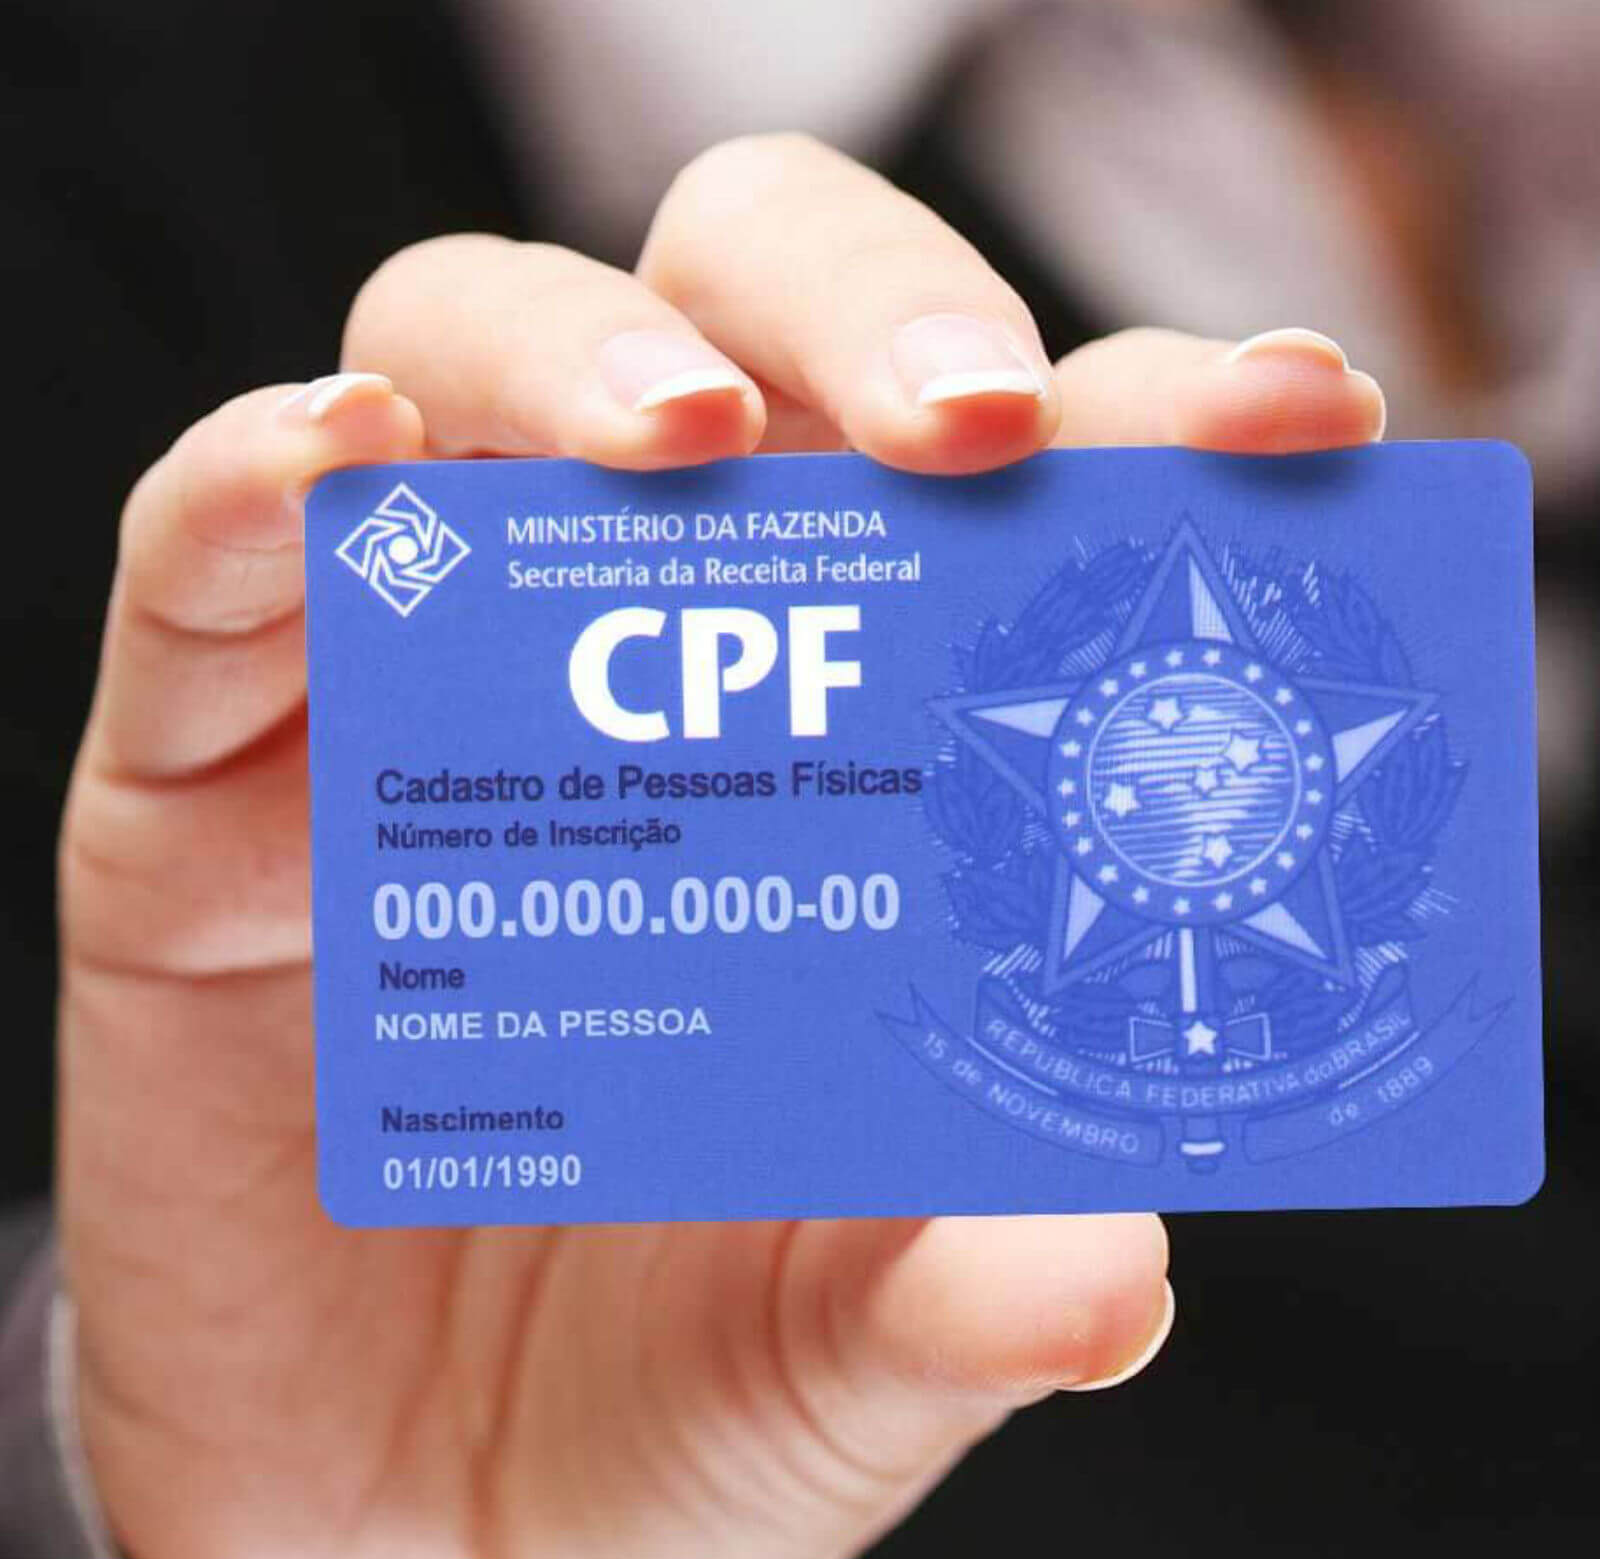 Veja dicas para consultar dívidas e saber se o seu CPF foi usado indevidamente